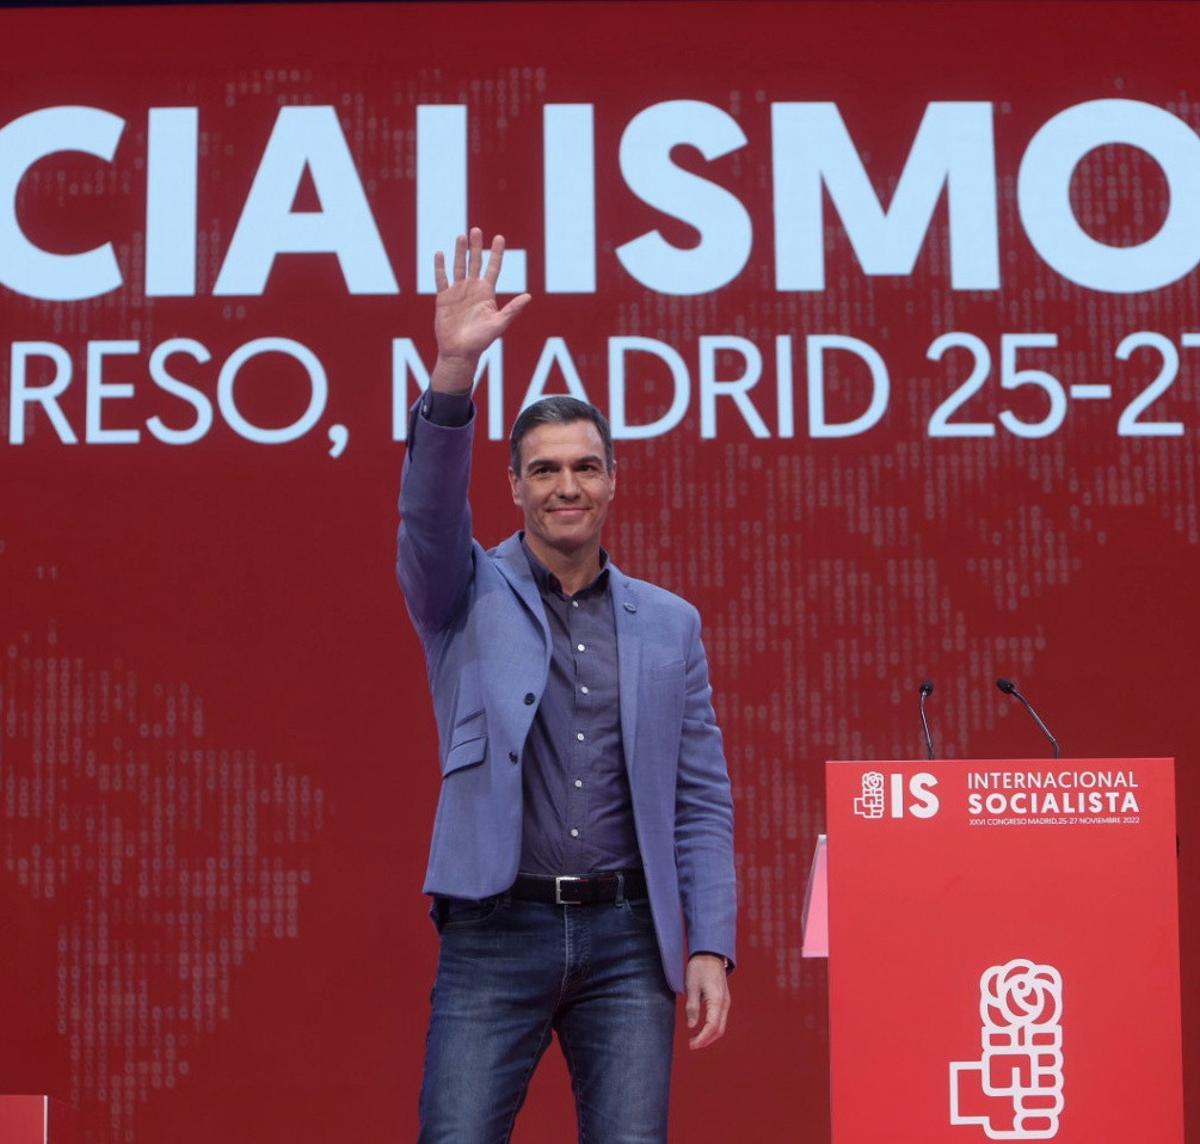 El presidente del Gobierno, Pedro Sánchez, saluda tras su proclamación como presidente de la Internacional Socialista durante la última jornada del XXVI Congreso de la Internacional Socialista (IS), en IFEMA Madrid, a 27 de noviembre de 2022.